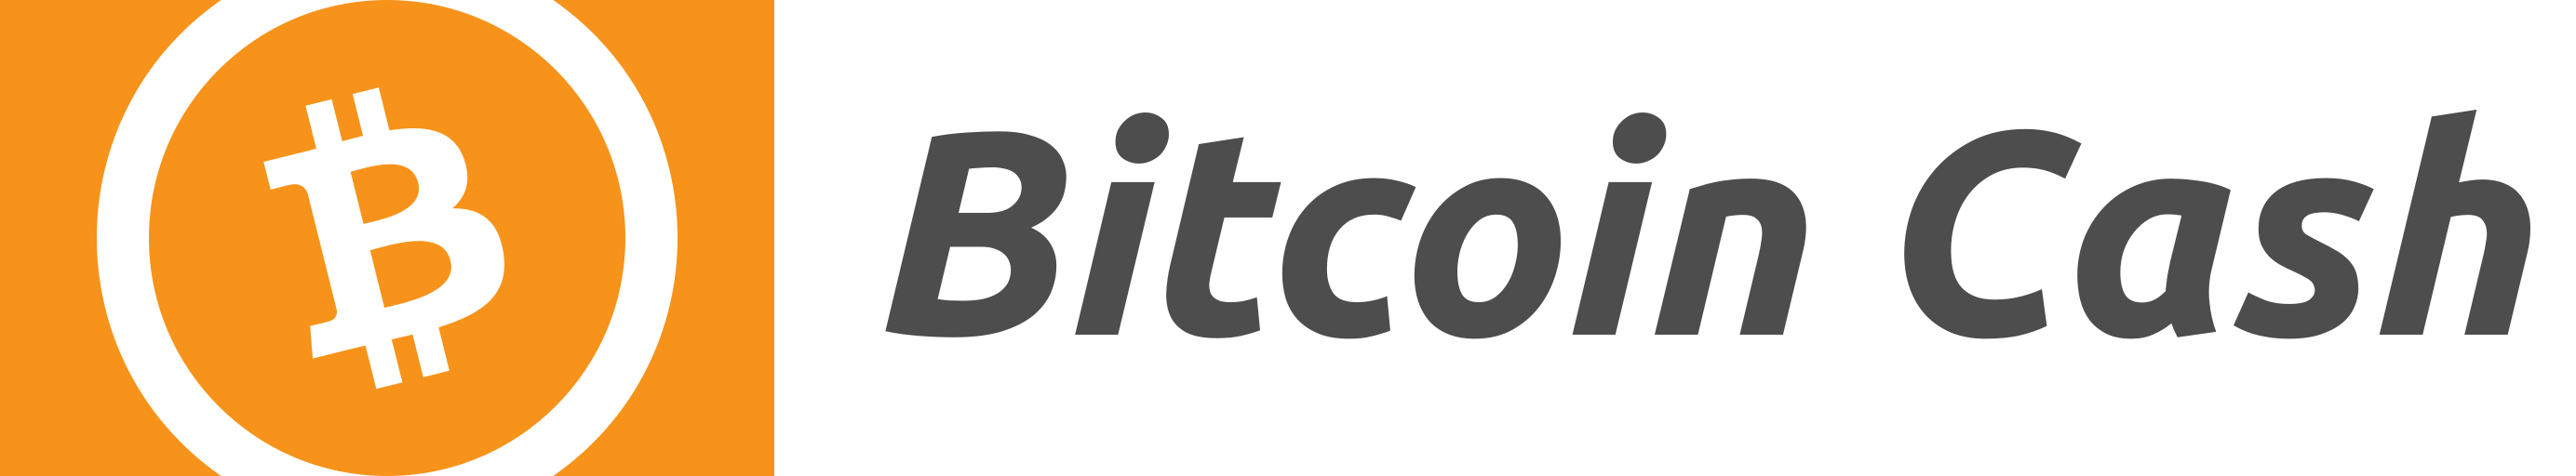 bitcoin-cash-logo-png-19.png